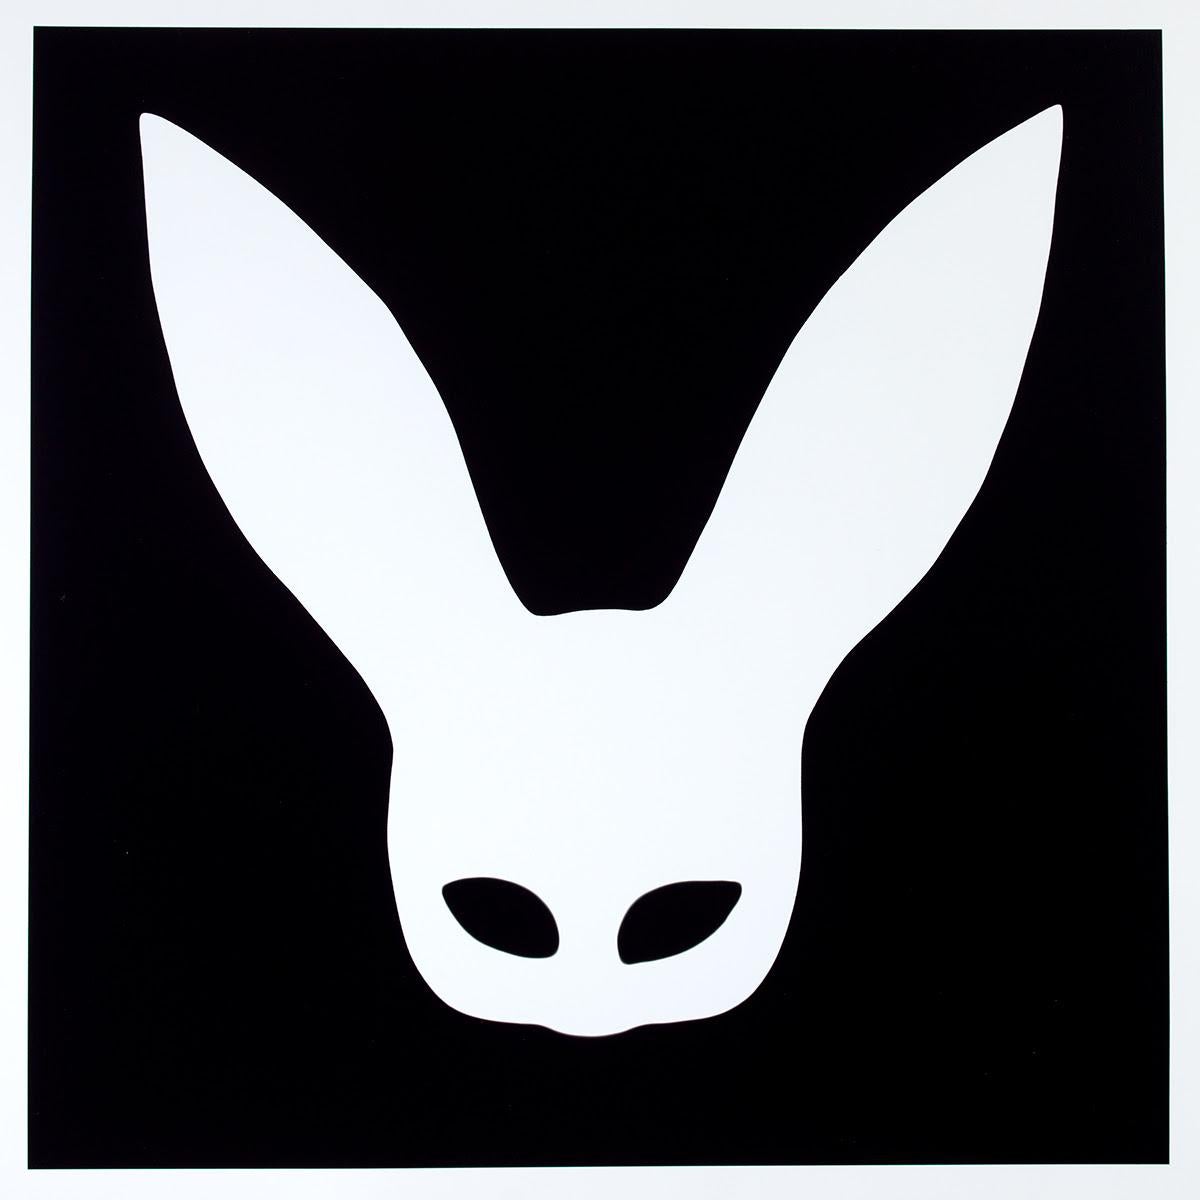 Série : Silhouette
Photogramme

"Bunny Photogram" est une pièce unique de 18 par 18 pouces qui n'a jamais été réalisée et ne pourra jamais l'être.
Un photogramme est une image obtenue en plaçant des objets directement sur une surface sensible à la